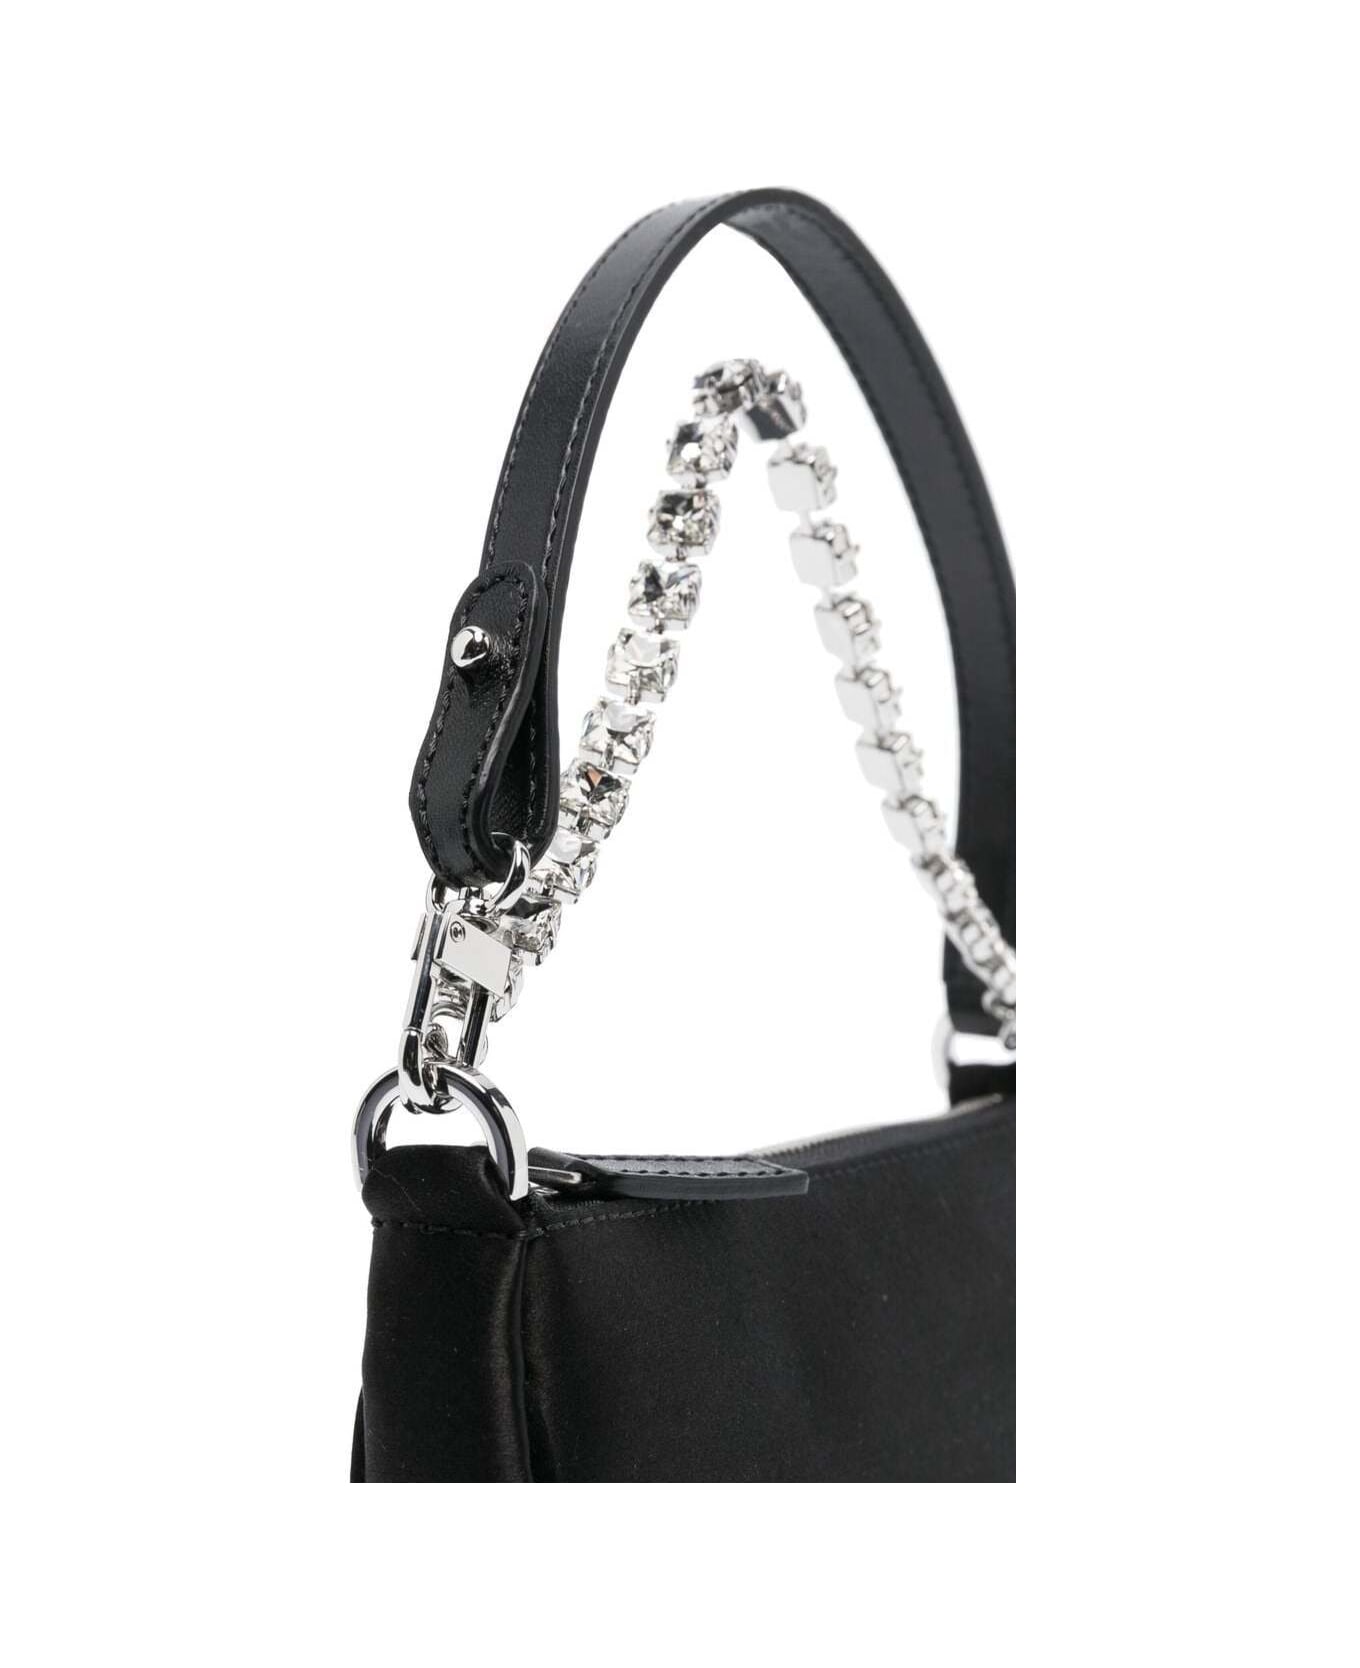 BY FAR 'mini Rachel' Black Shoulder Bag With Crystal Chain In Silk Woman By Far - Black